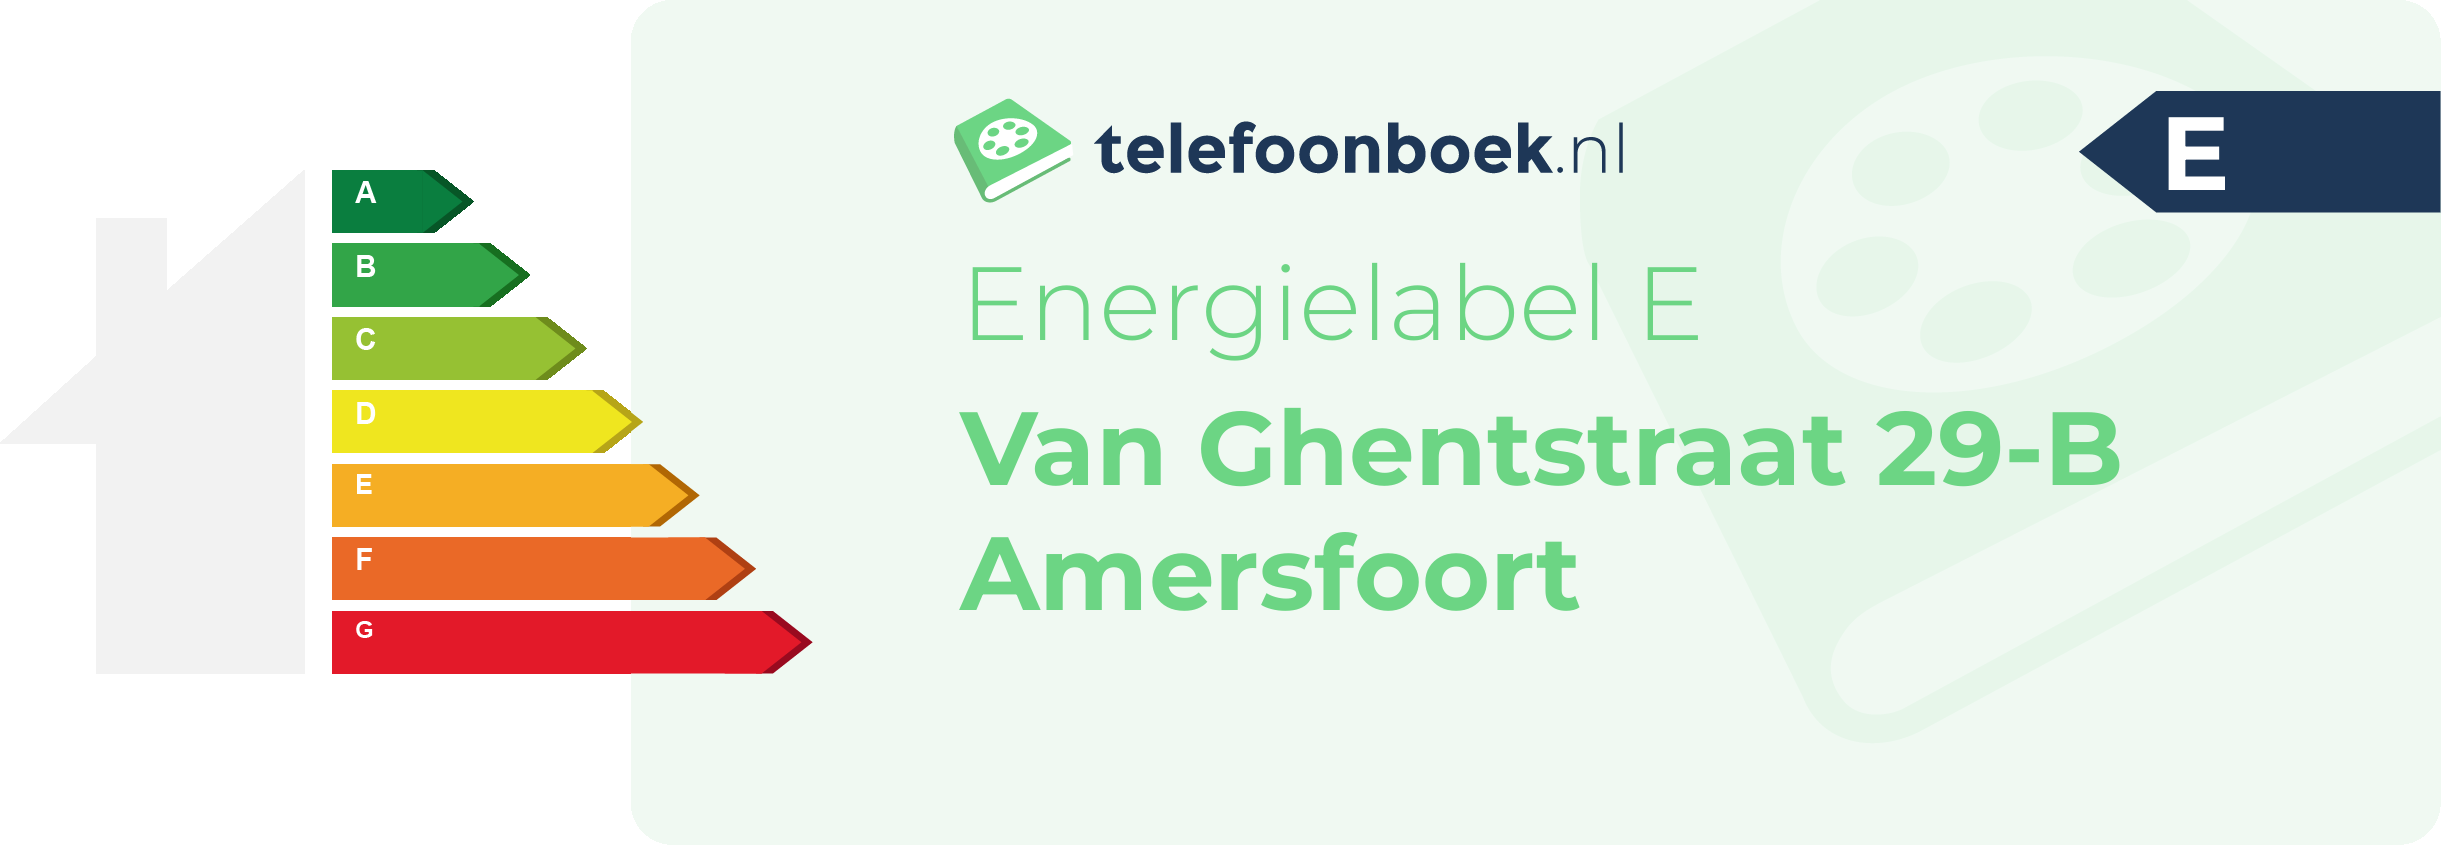 Energielabel Van Ghentstraat 29-B Amersfoort